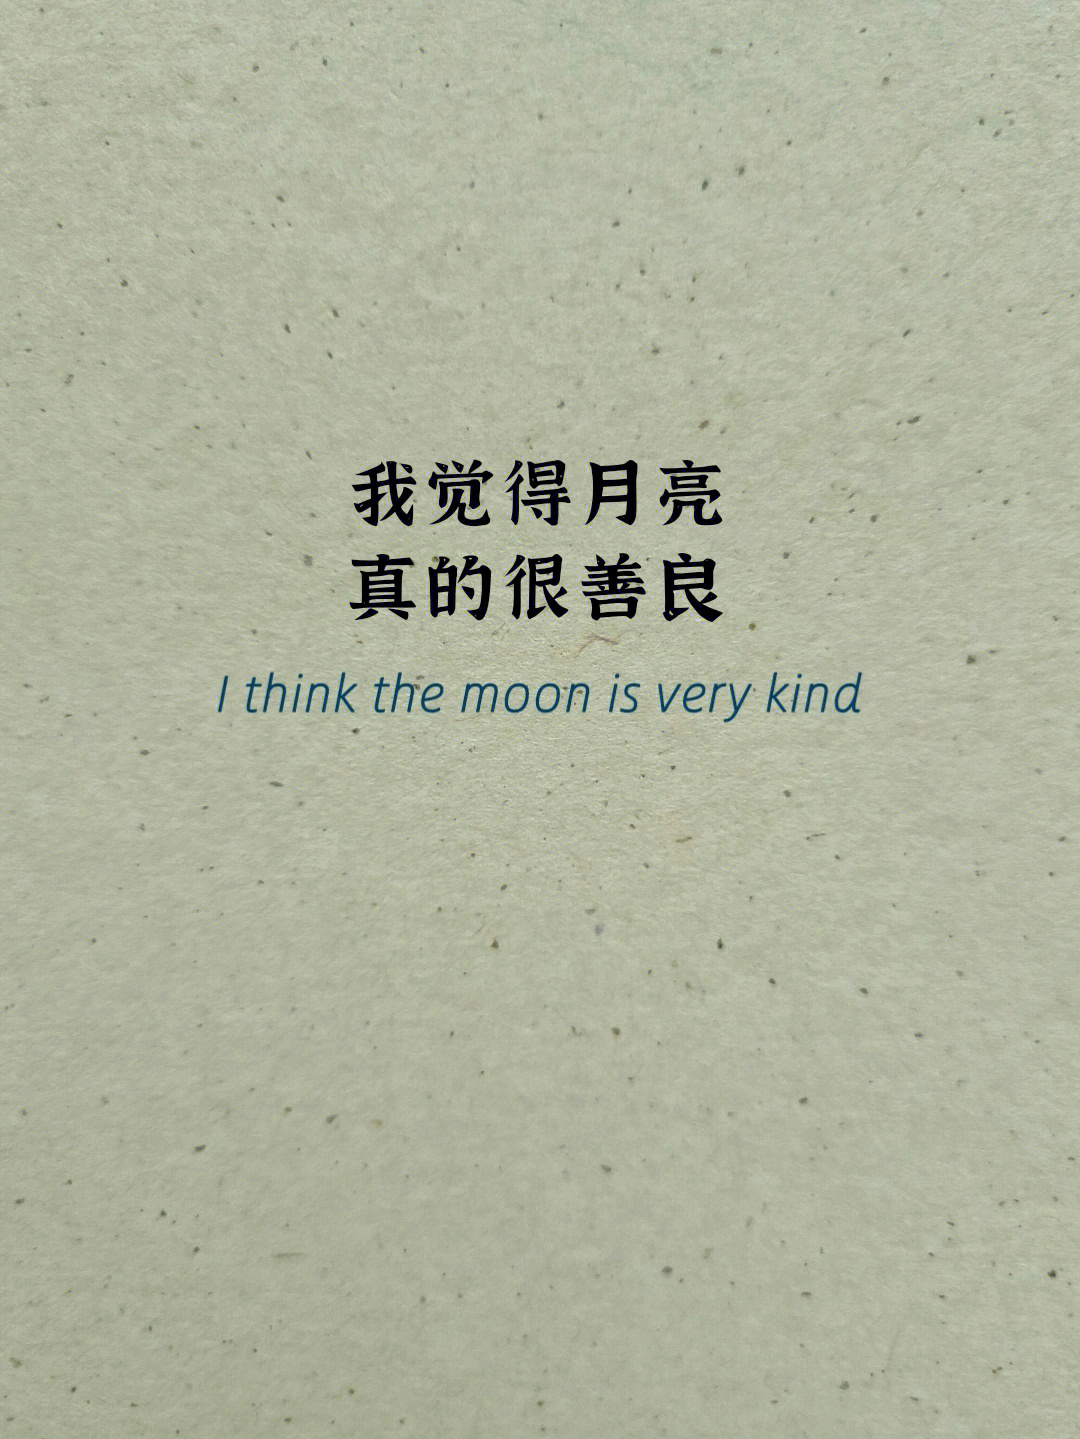 英文短诗善良的月亮thekindmoon